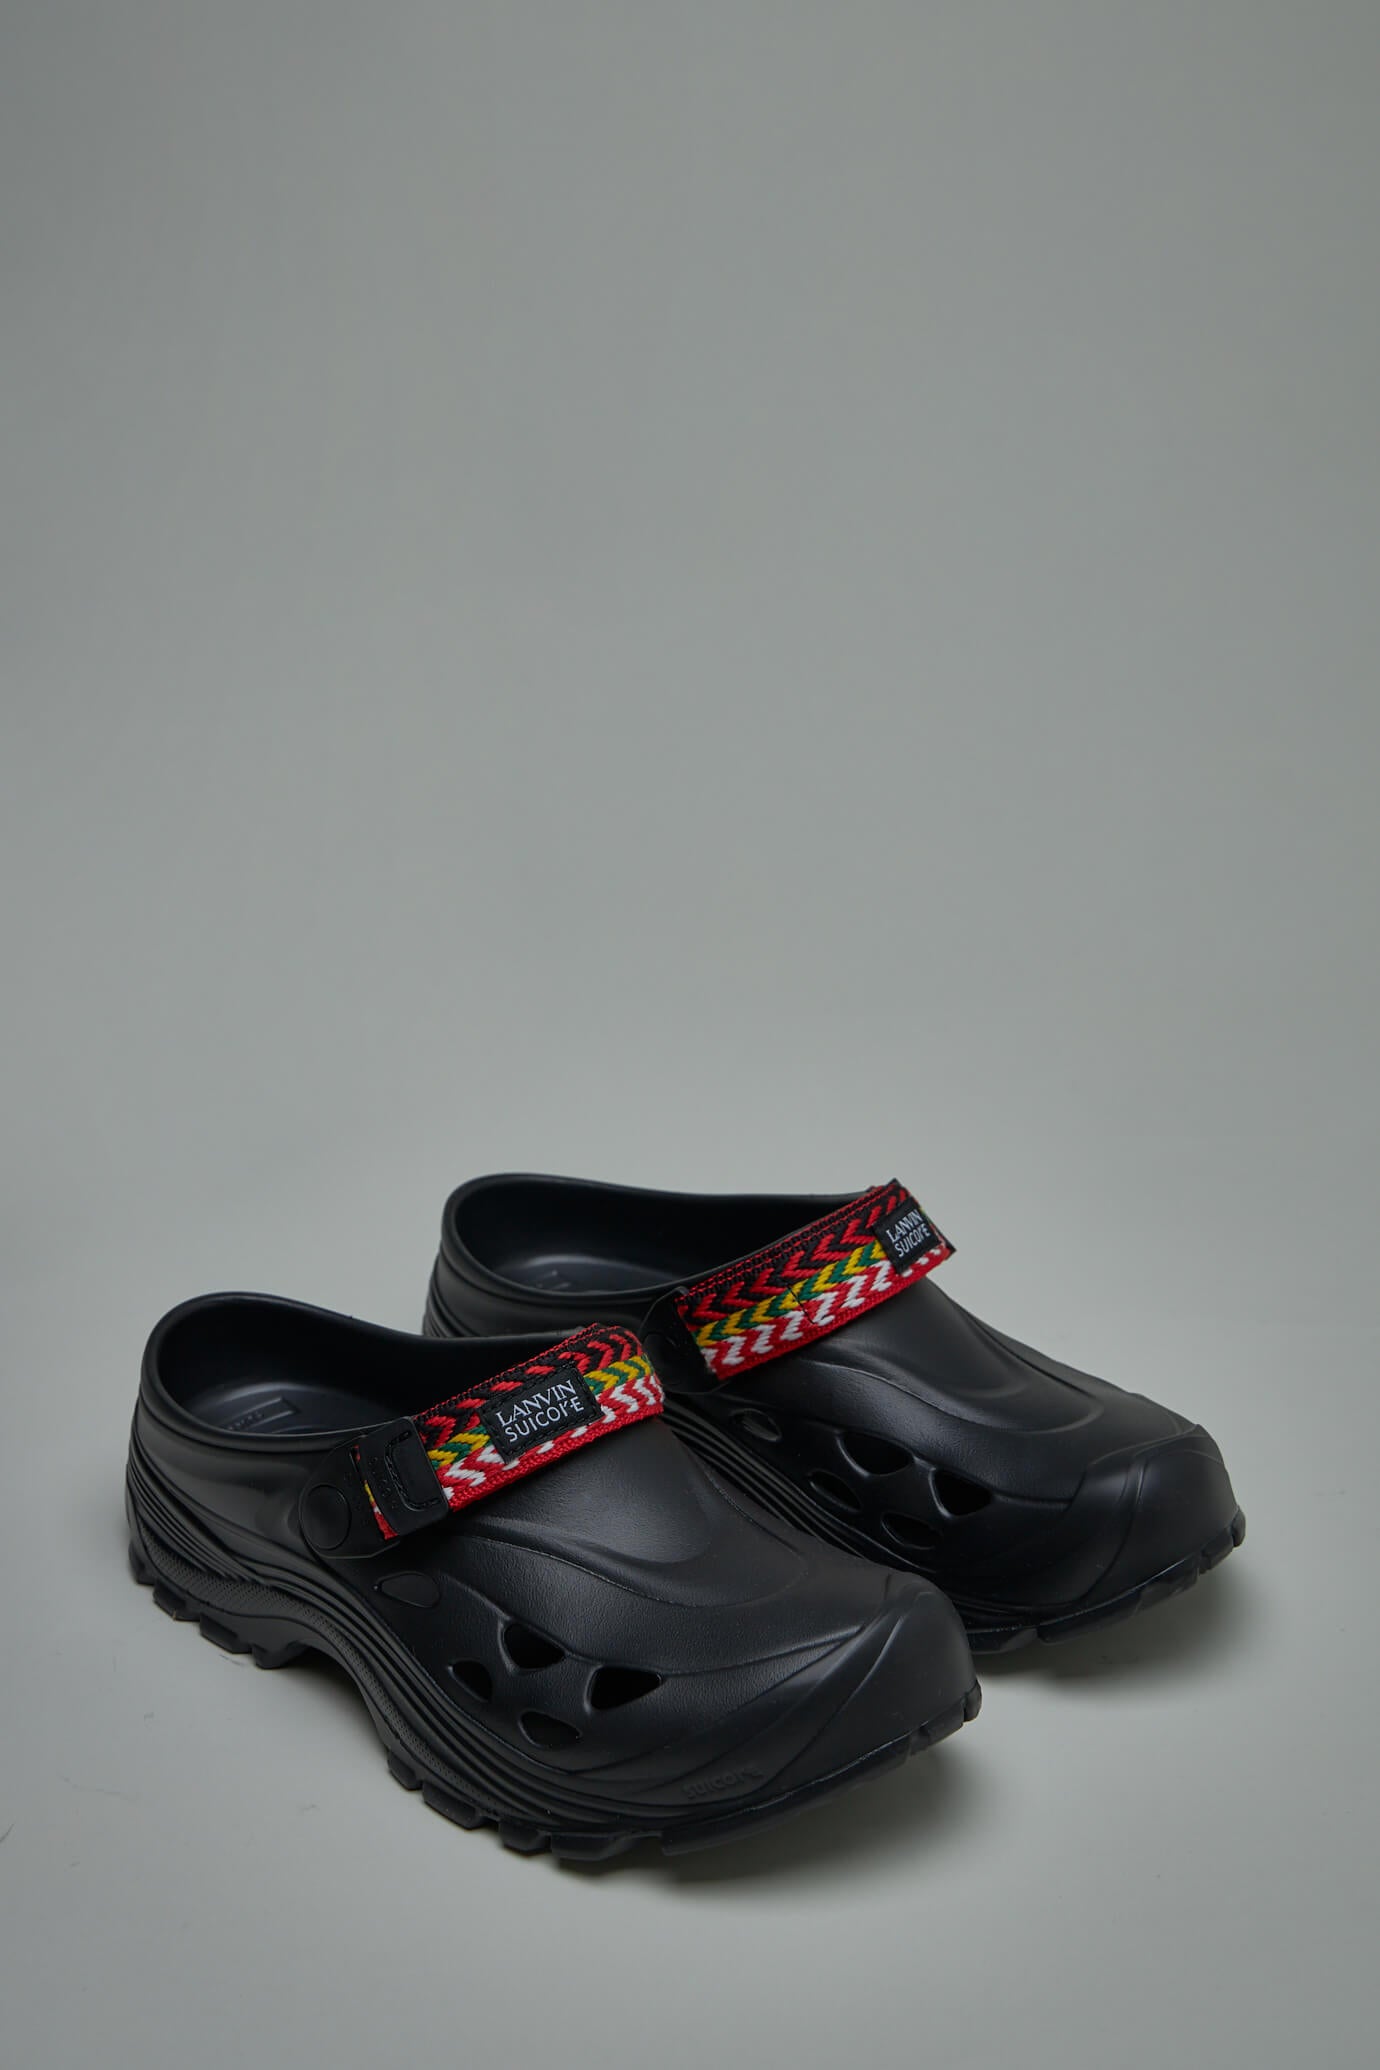 Lanvin x Suicoke slippers